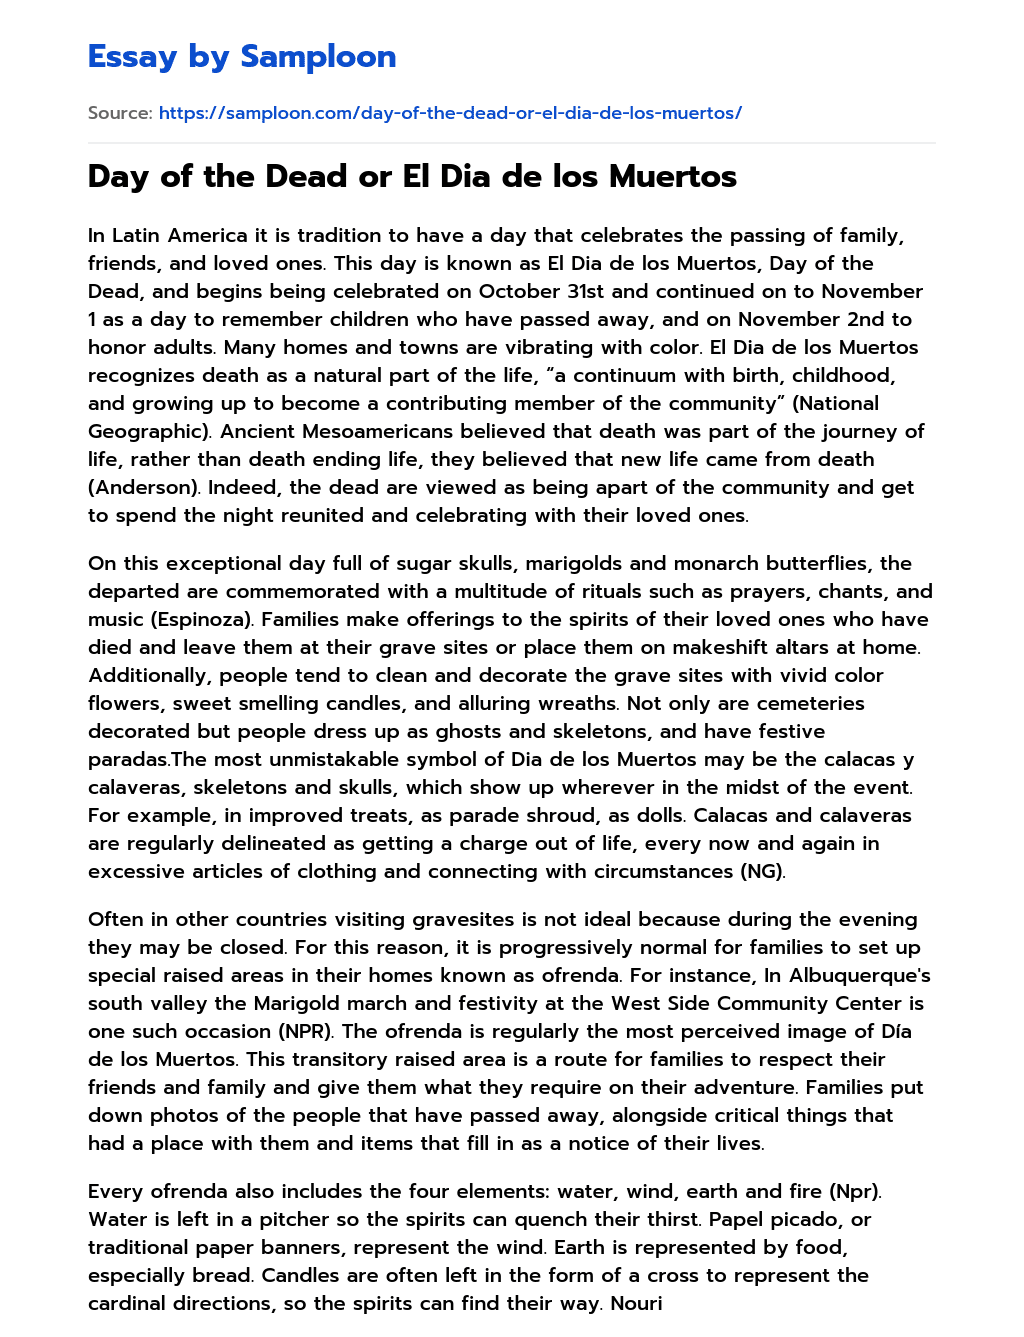 Day of the Dead or El Dia de los Muertos essay